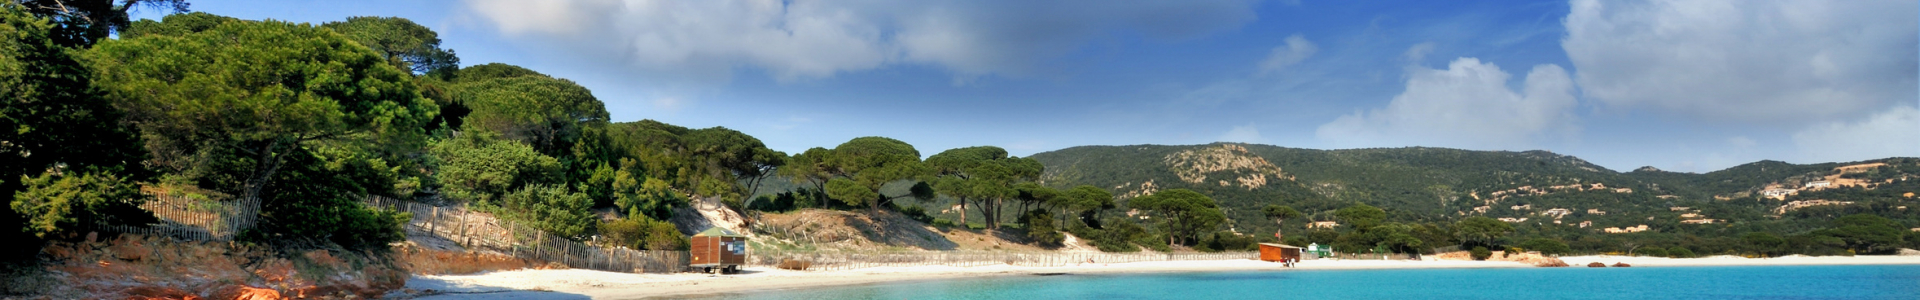 Voyages loisirs : Corse, locations 8j/7n campings et villages vacances